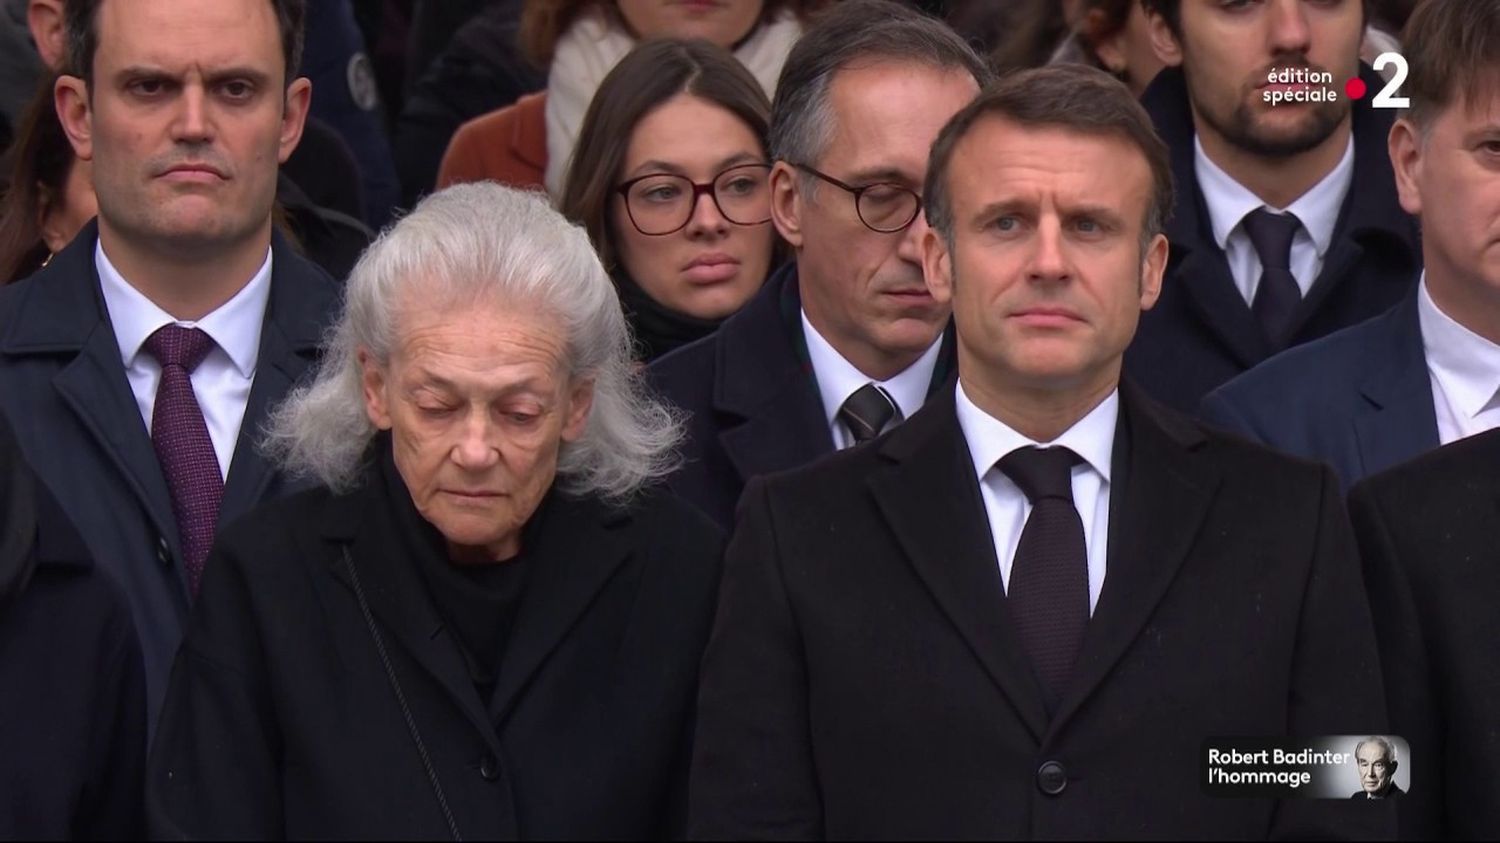 Hommage national à Robert Badinter : "Votre nom devra s'inscrire au Panthéon", déclare Emmanuel Macron
          Le président de la République a prononcé mercredi l'éloge funèbre pour saluer la mémoire de l'ancien garde des Sceaux, mort le 9 février.